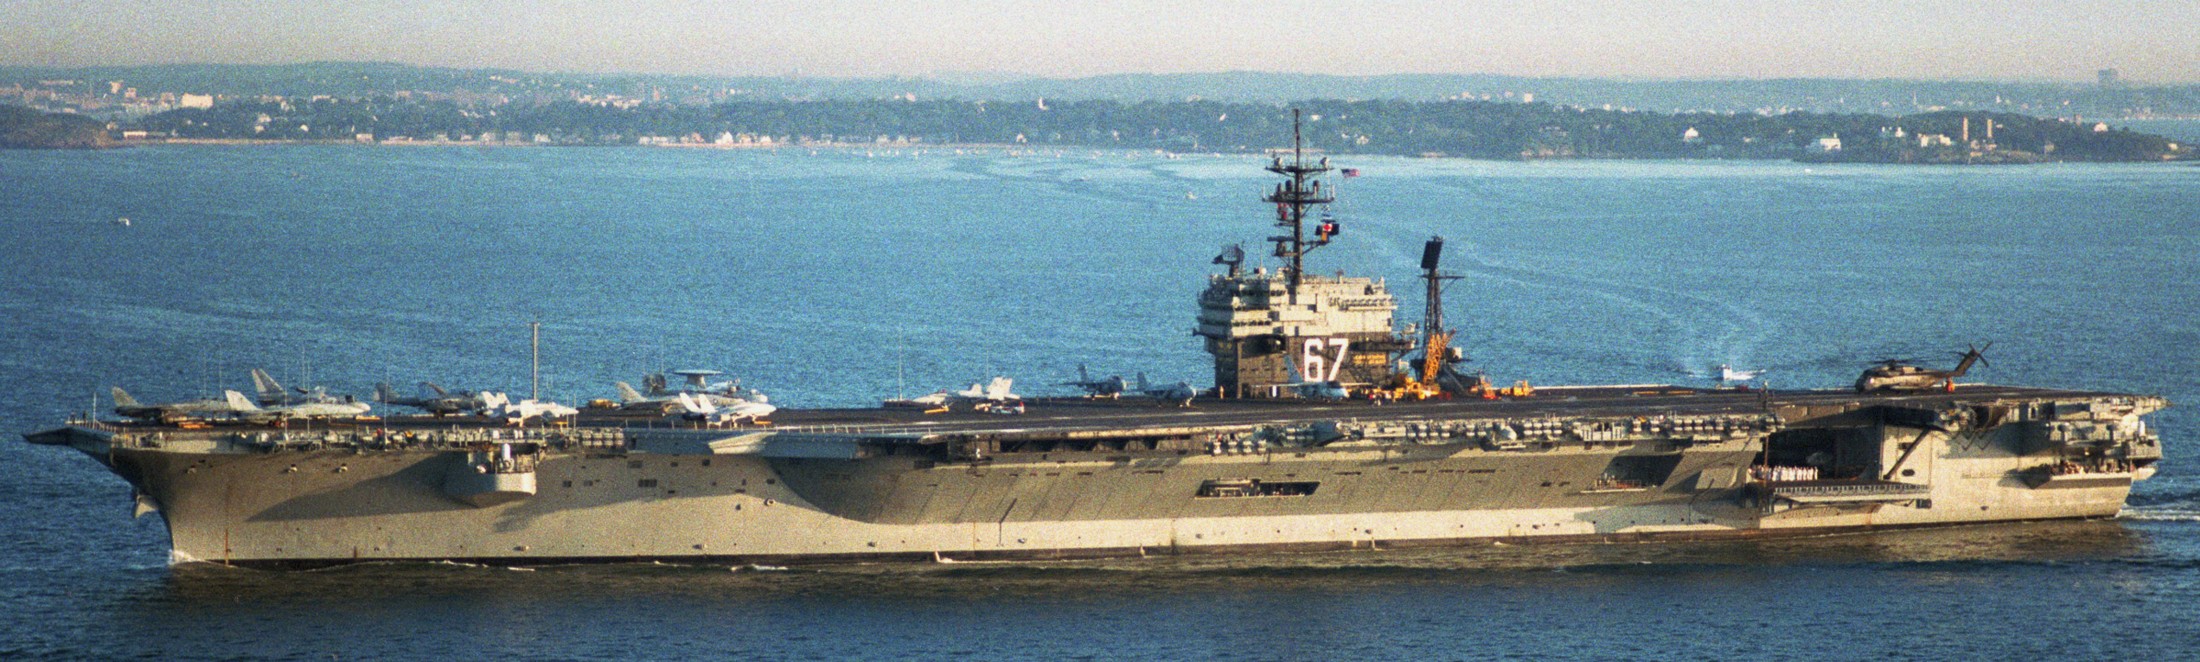 cv-67 uss john f. kennedy aircraft carrier us navy 96